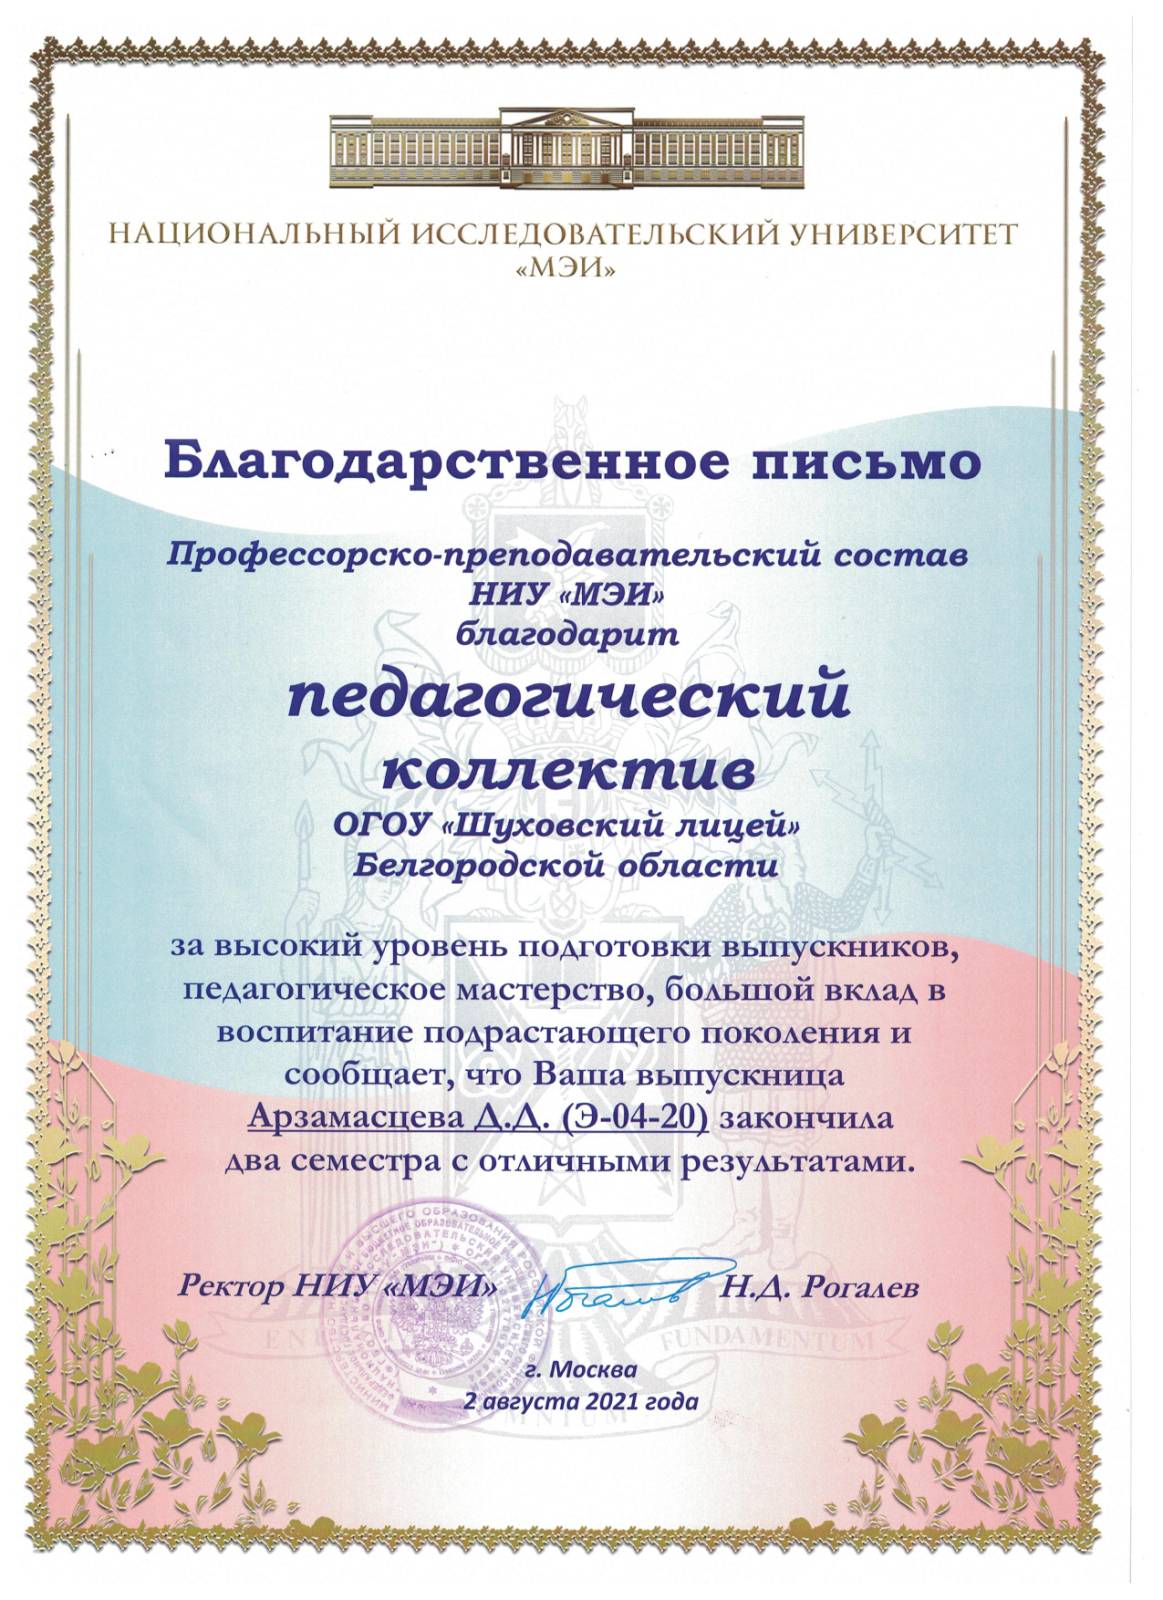 За подготовку выпускников НИУ "МЭИ" г.Москва 2021 год